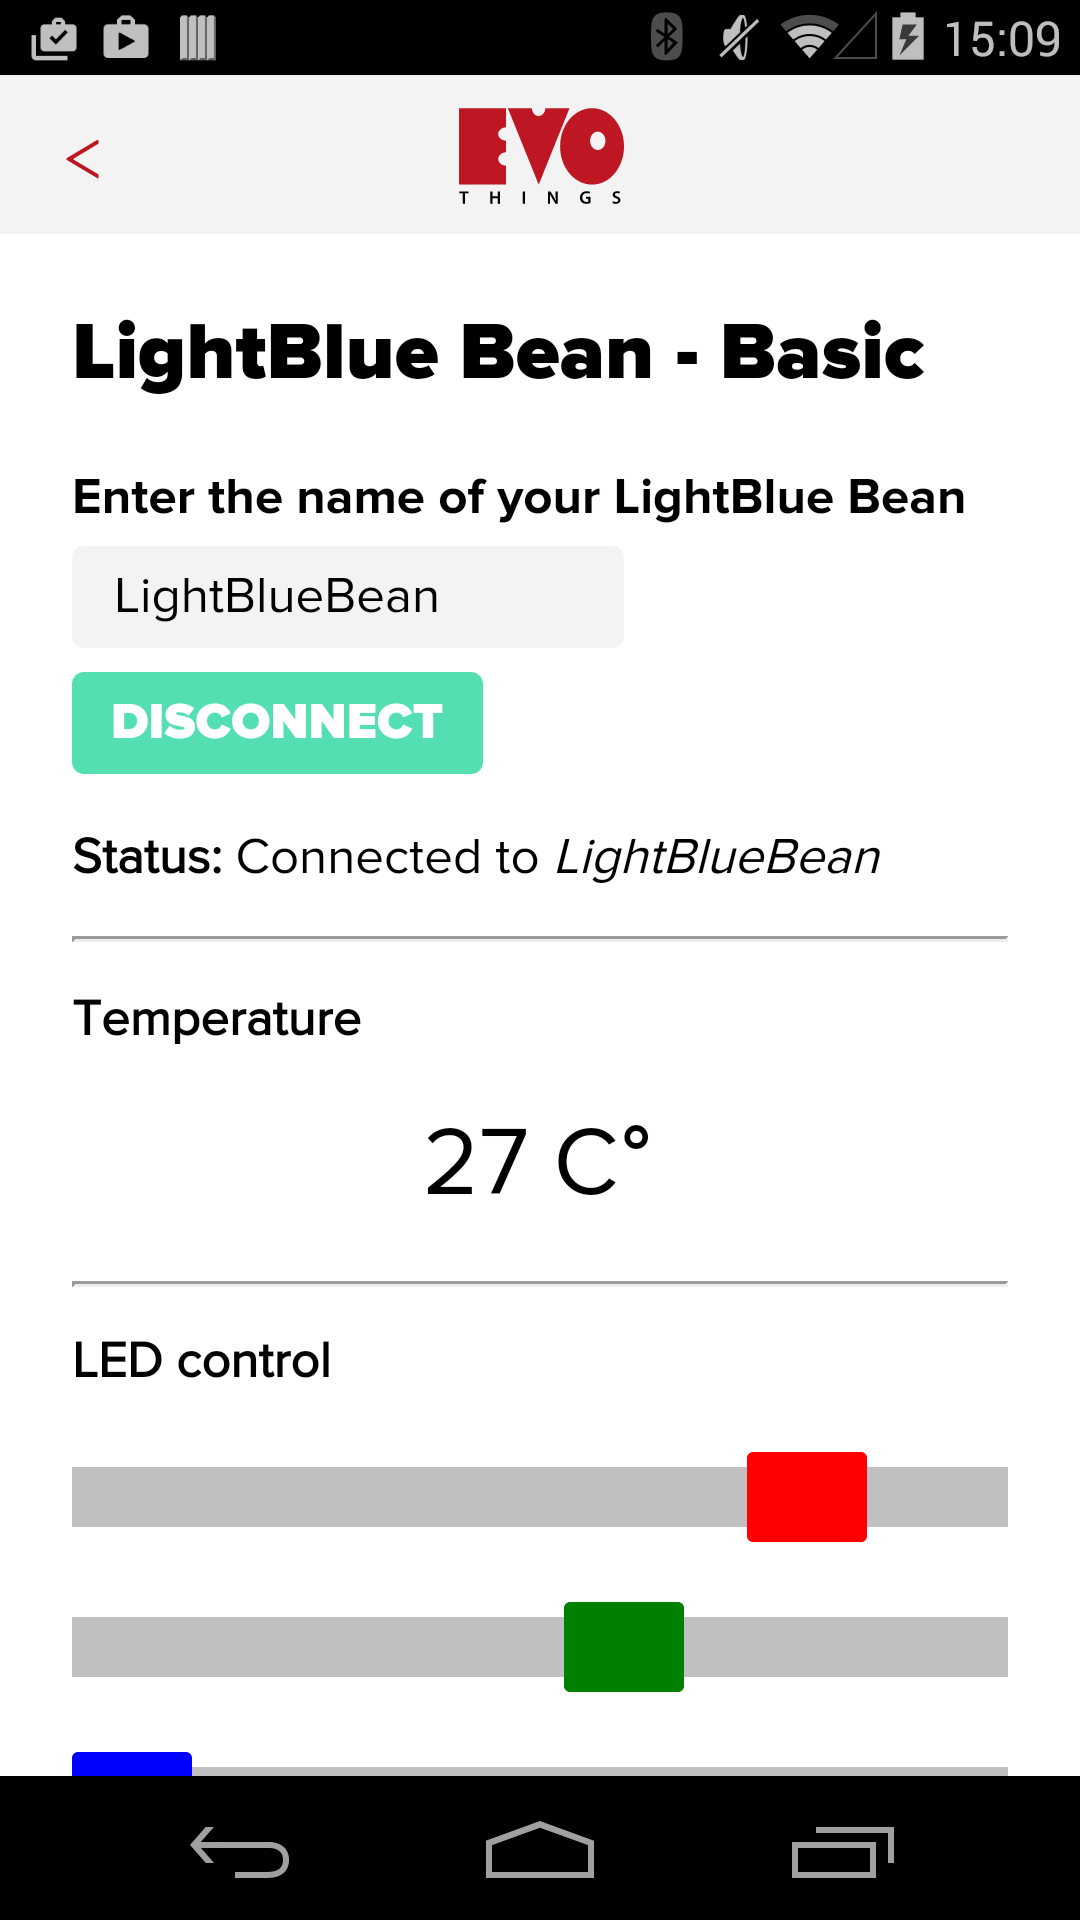 LightBlue Bean - Basic